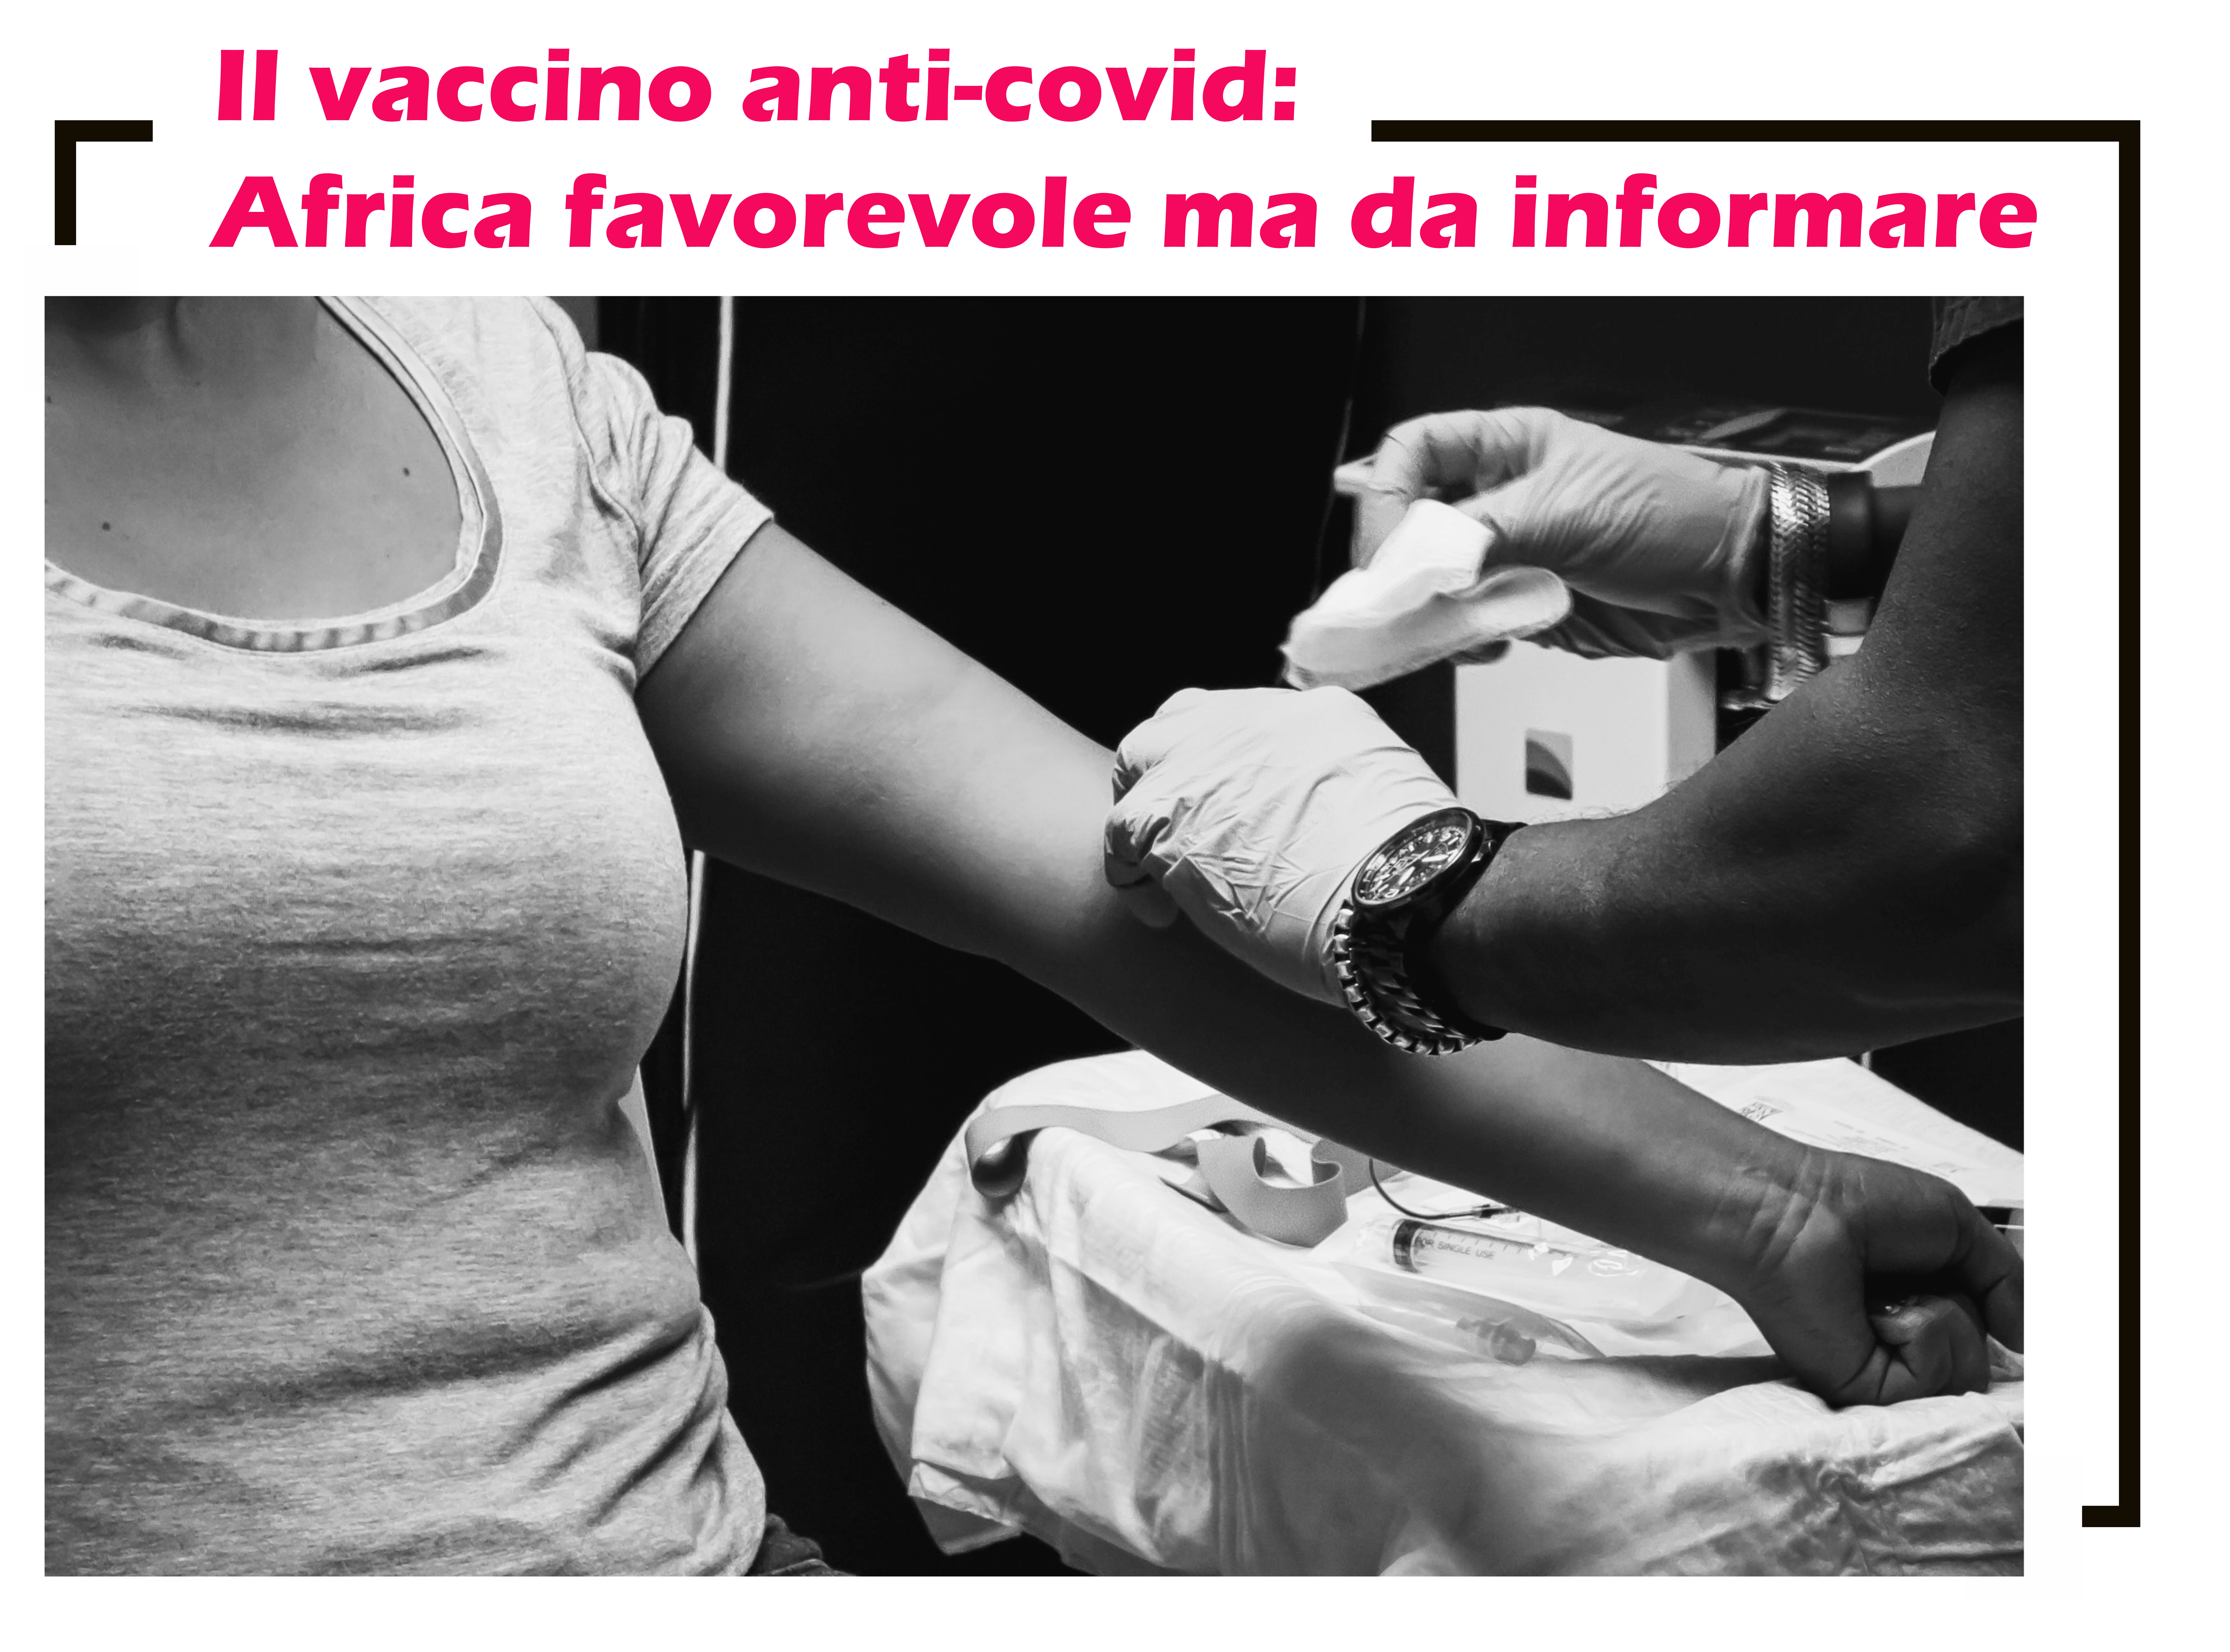 Il vaccino anti-covid in Africa, la maggioranza della popolazione favorevole ad un vaccino sicuro